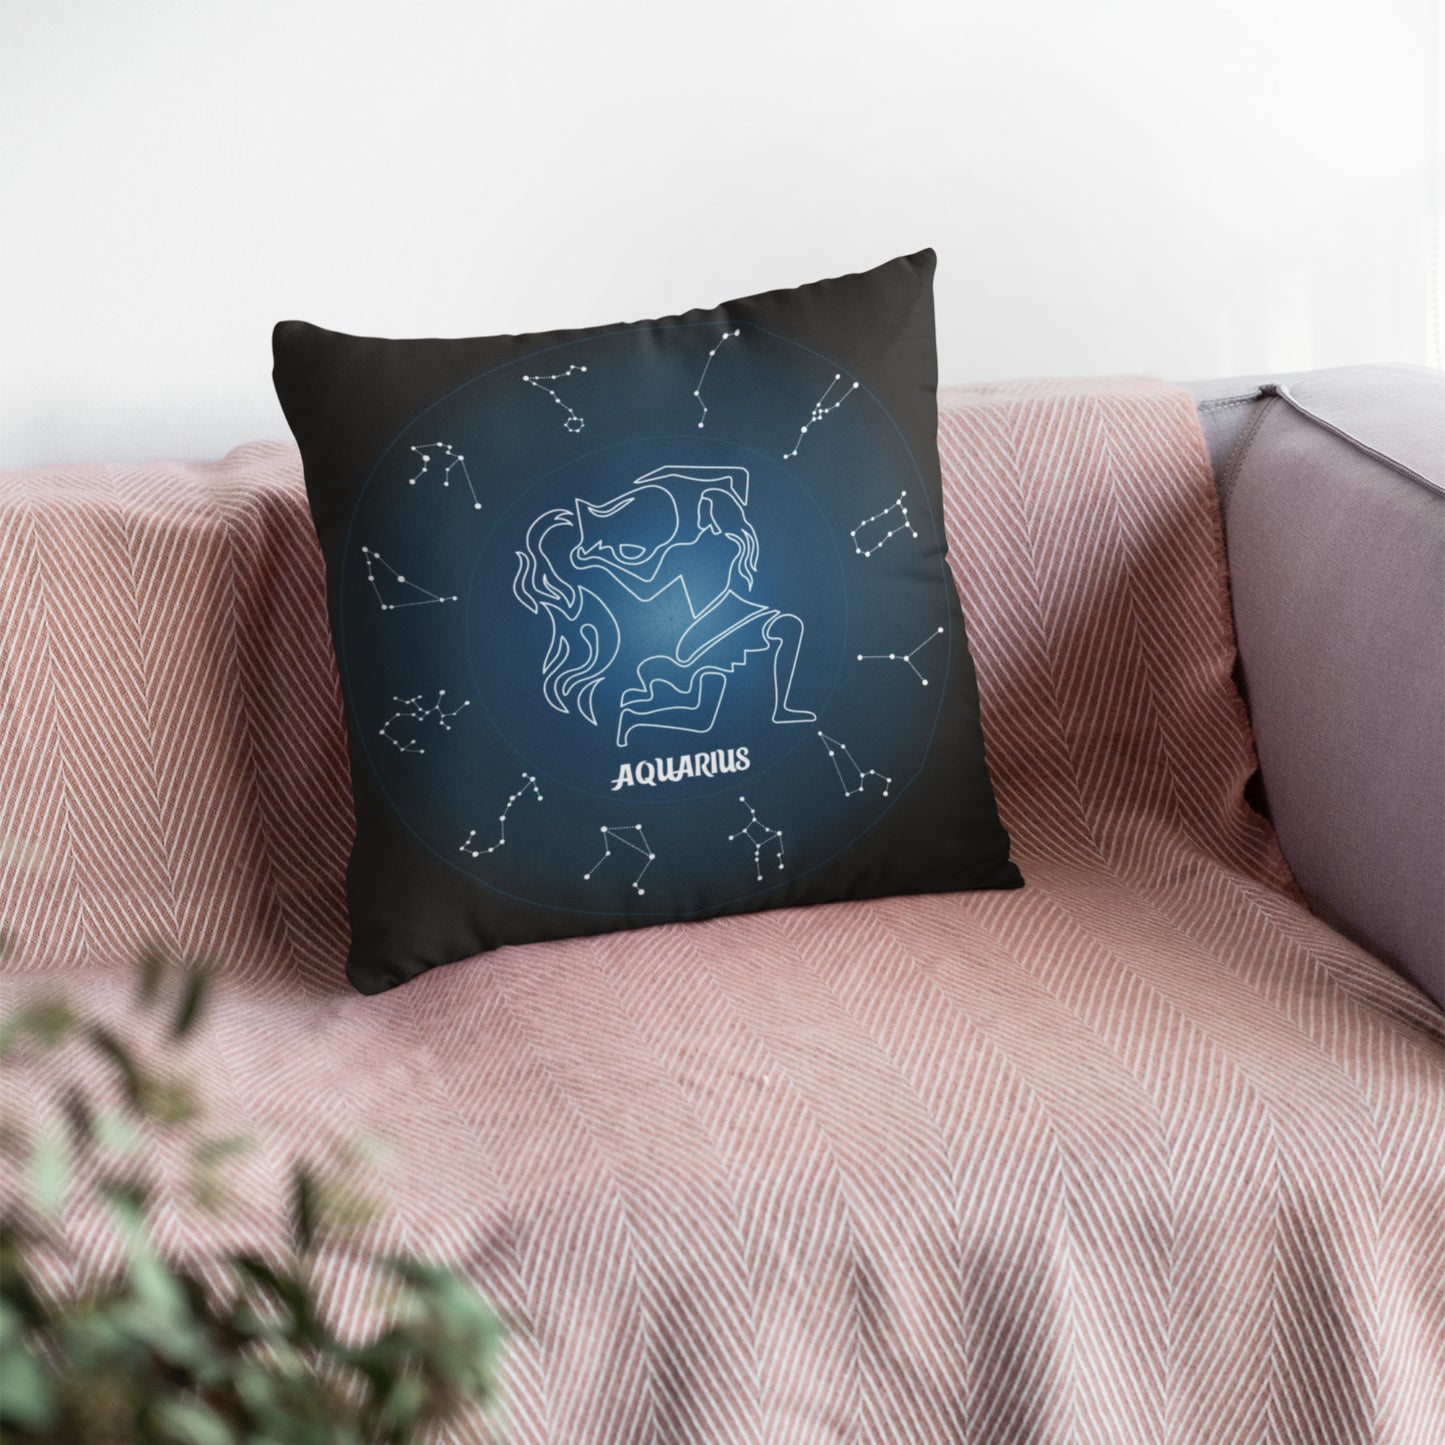 Zodiac-inspired Aquarius Throw Pillow